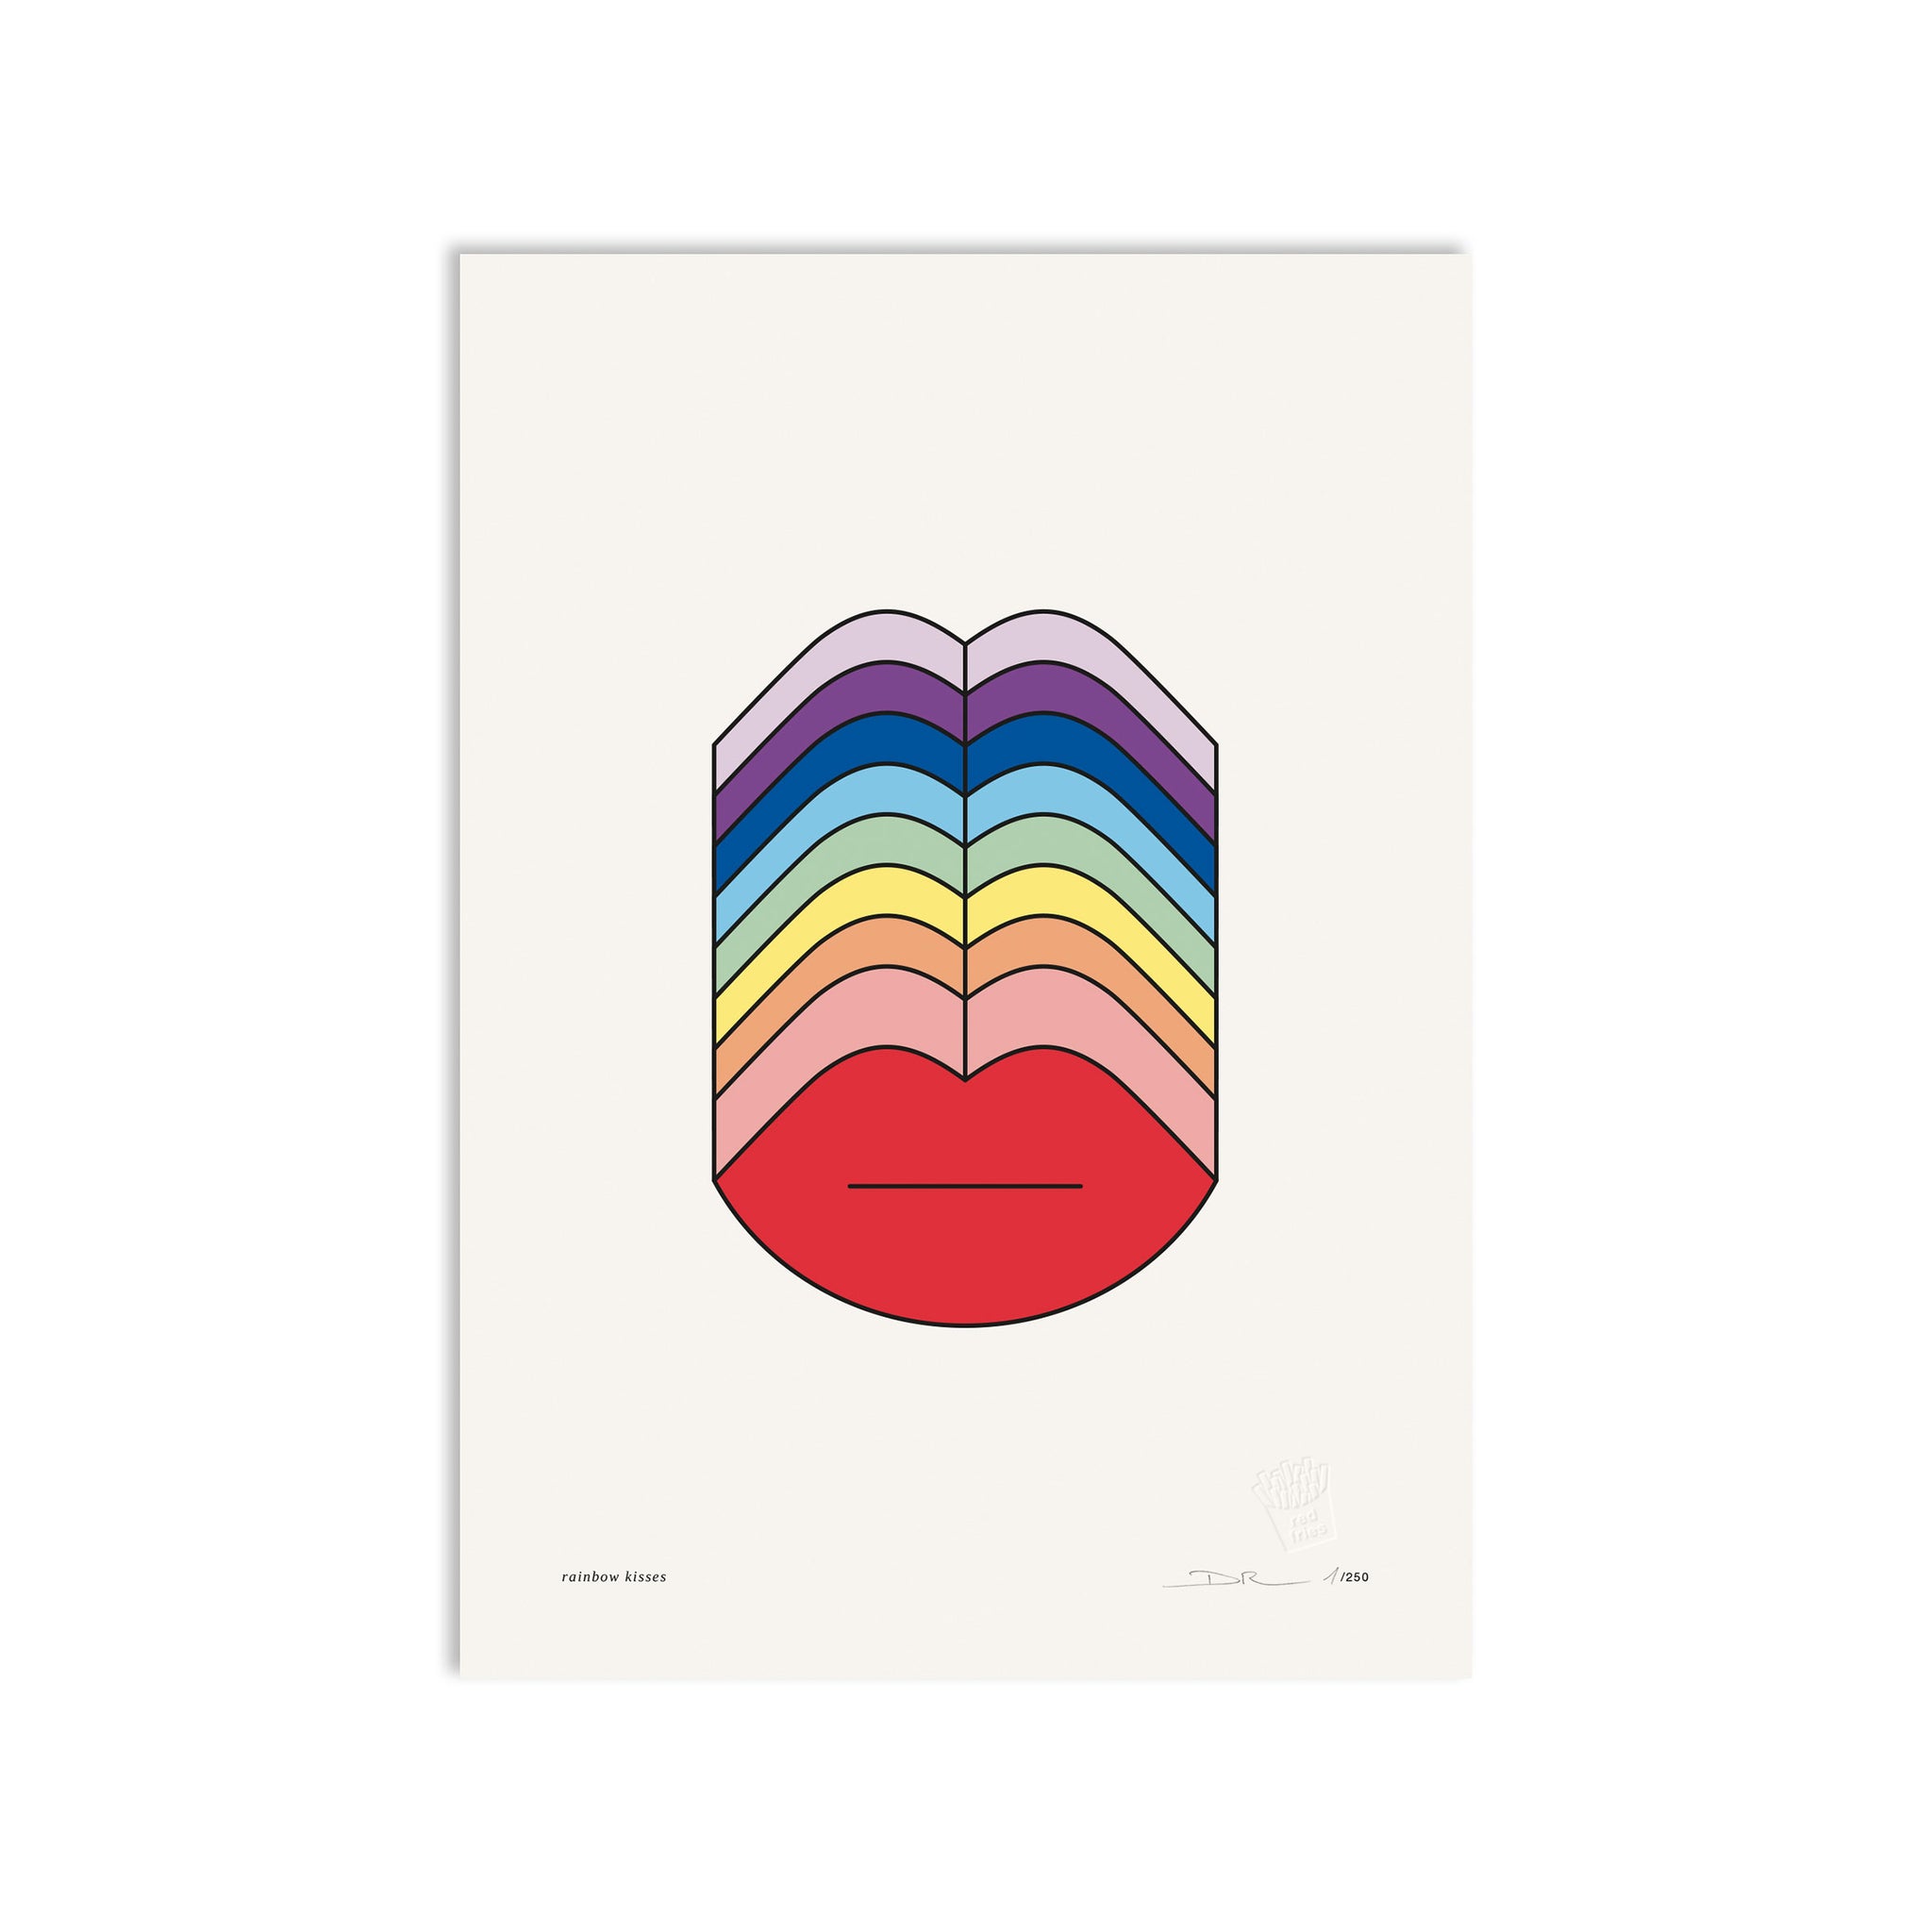 #0497 rainbow kisses a3